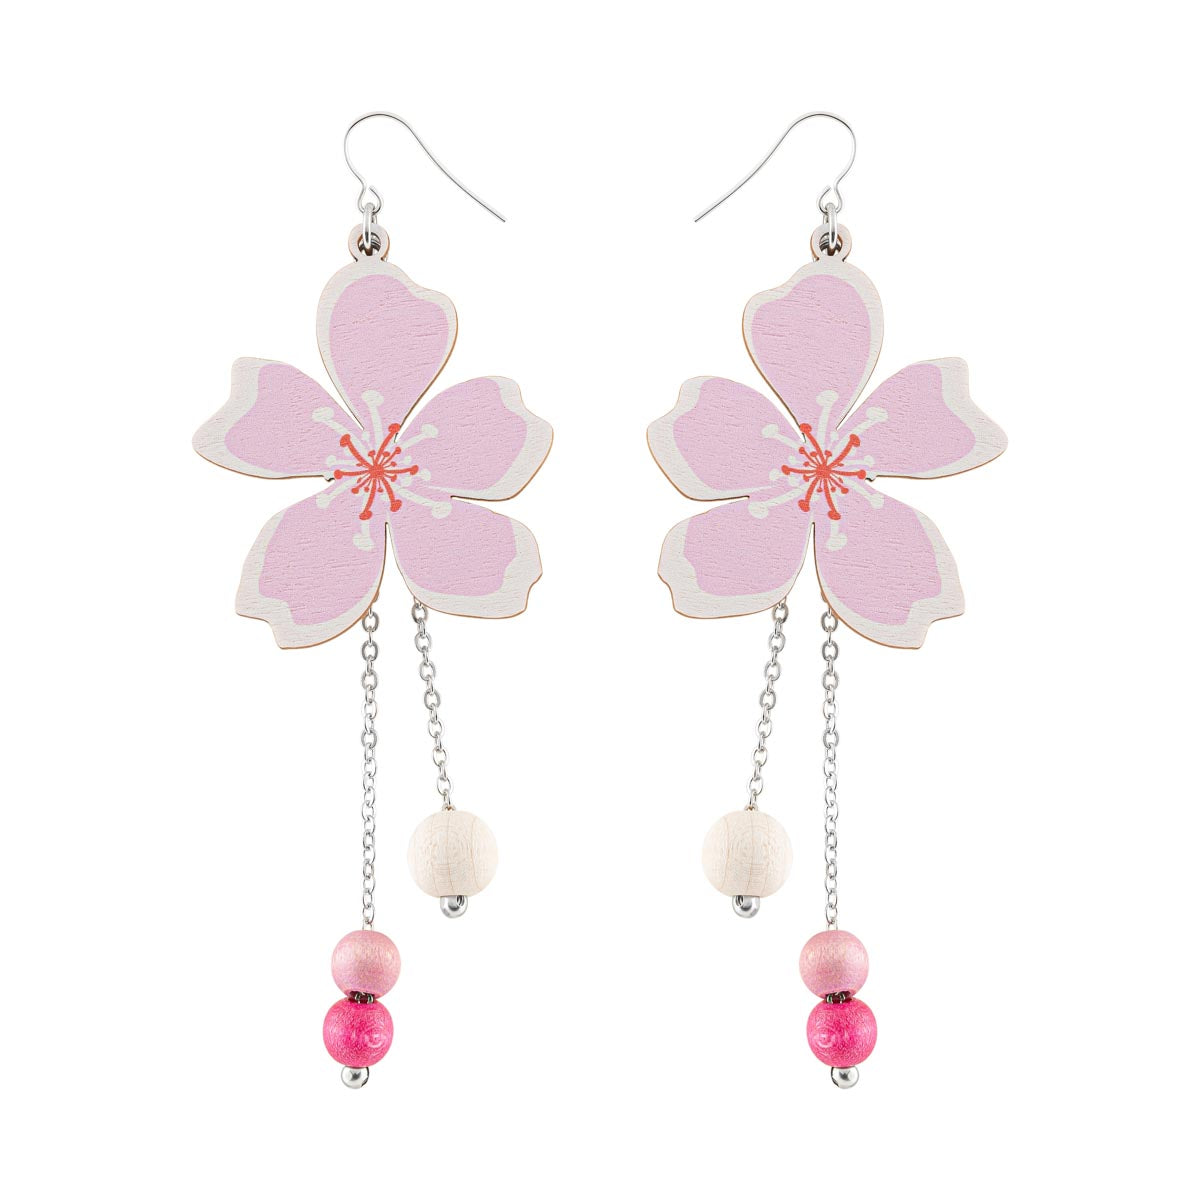 Kirsikankukka earrings, shades of pink